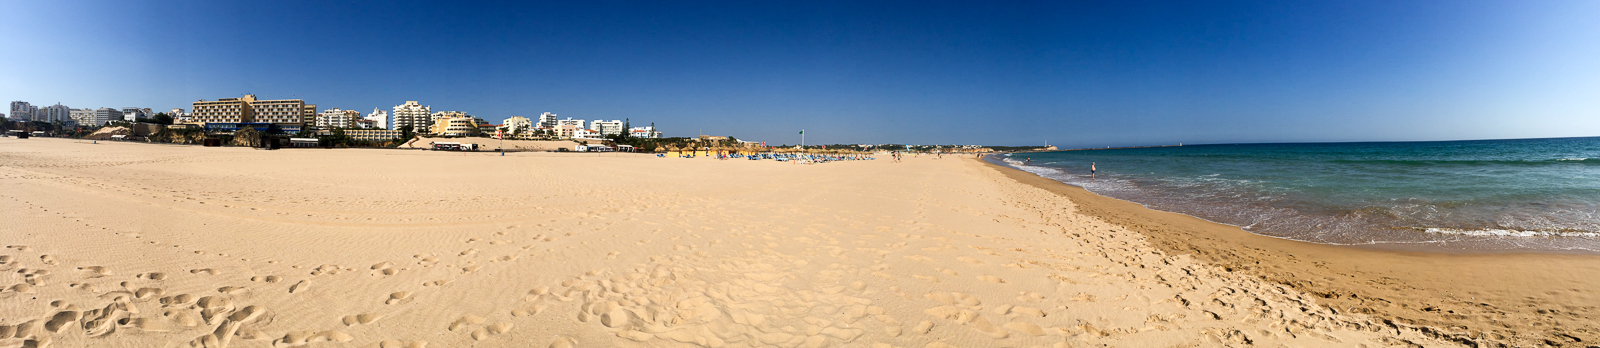 Dag06-Algarve-028-IMG_2213